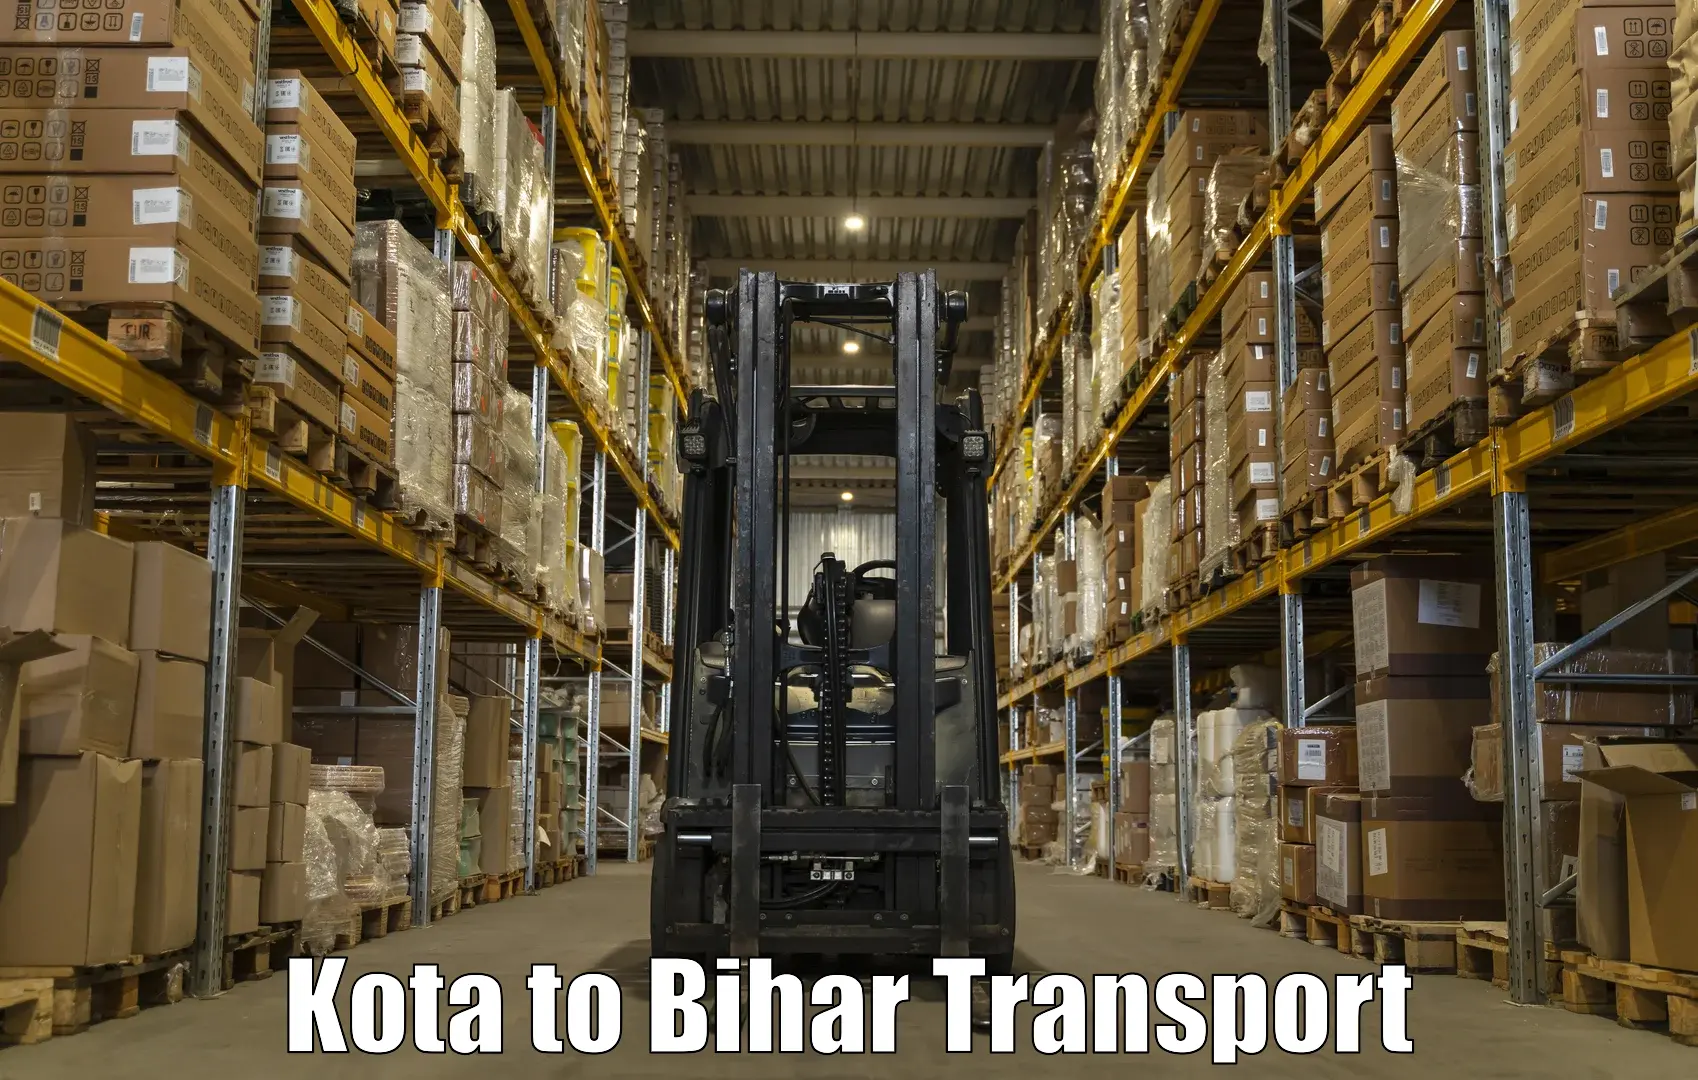 Daily transport service Kota to Daudnagar